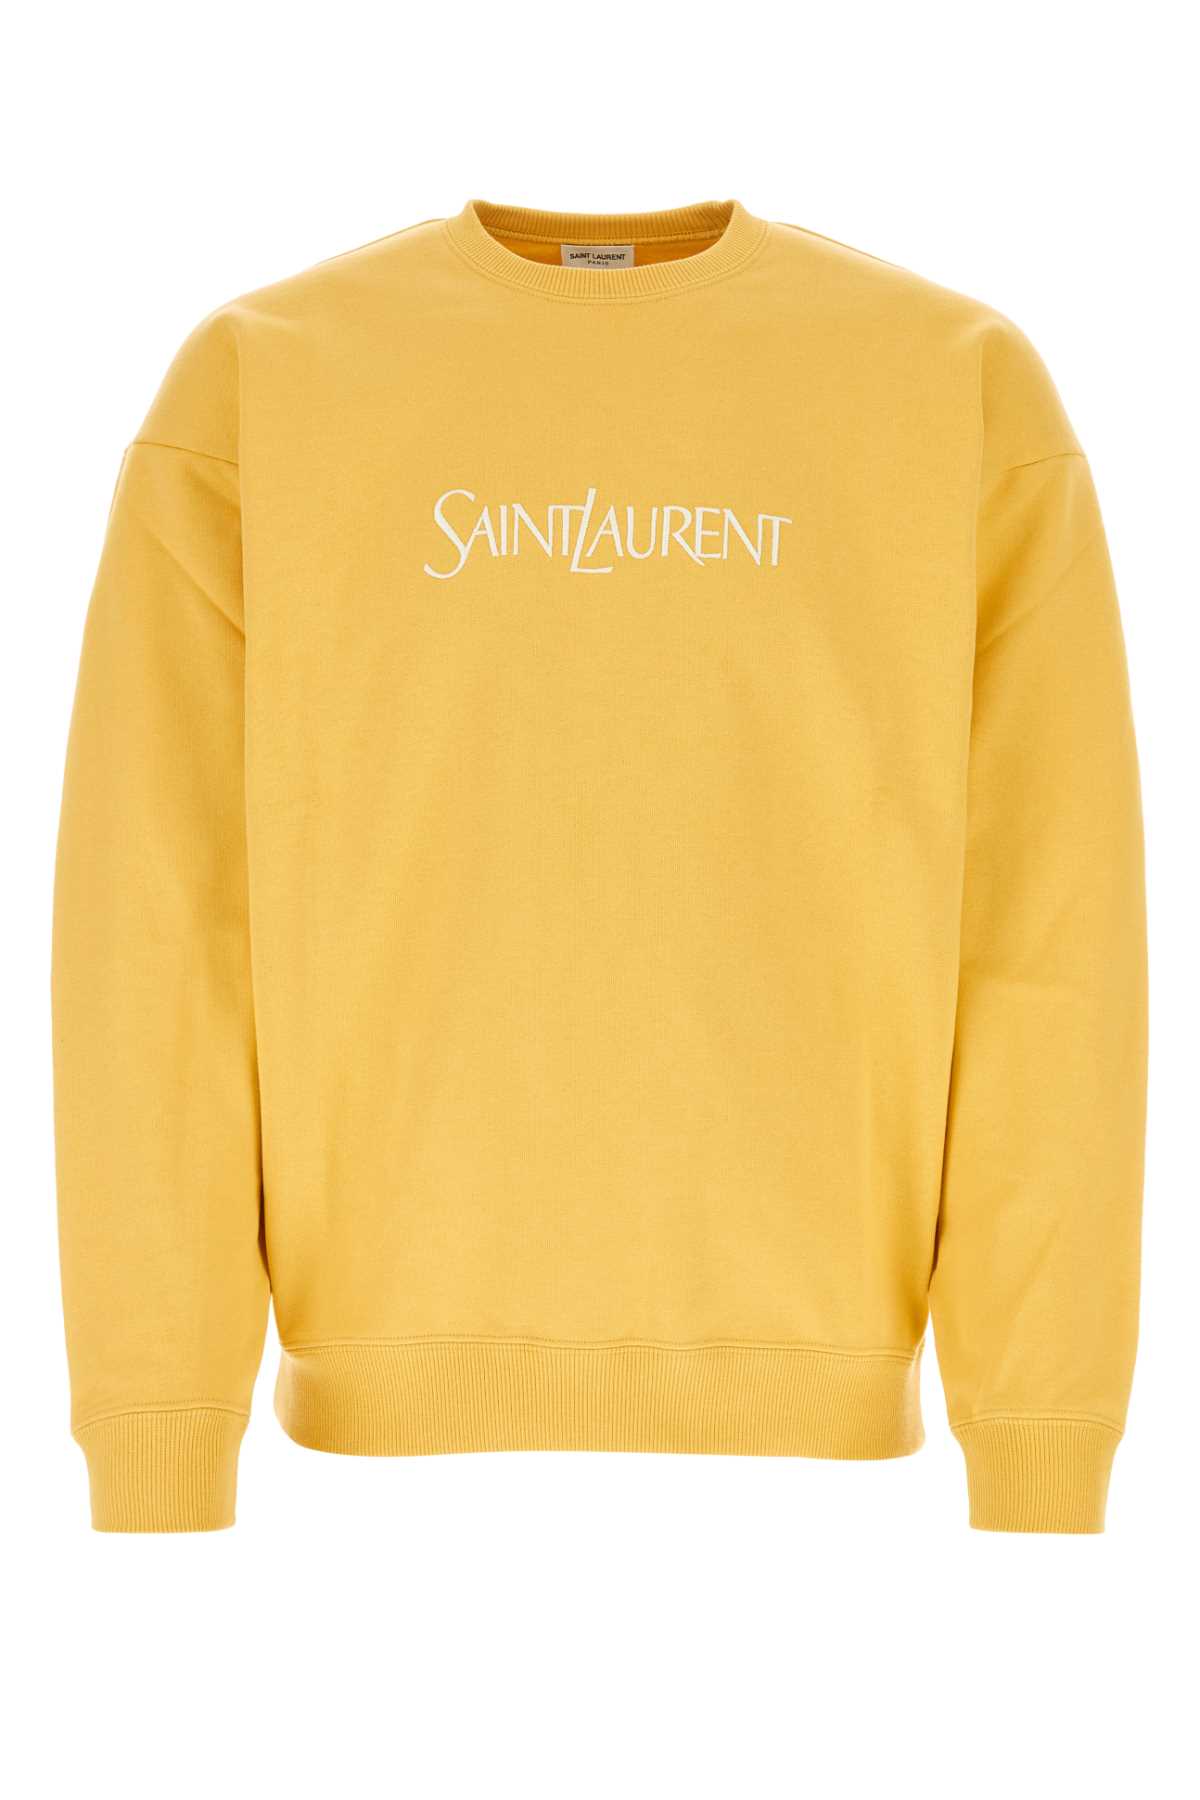 Shop Saint Laurent Yellow Cotton Sweatshirt In Jaunenaturel